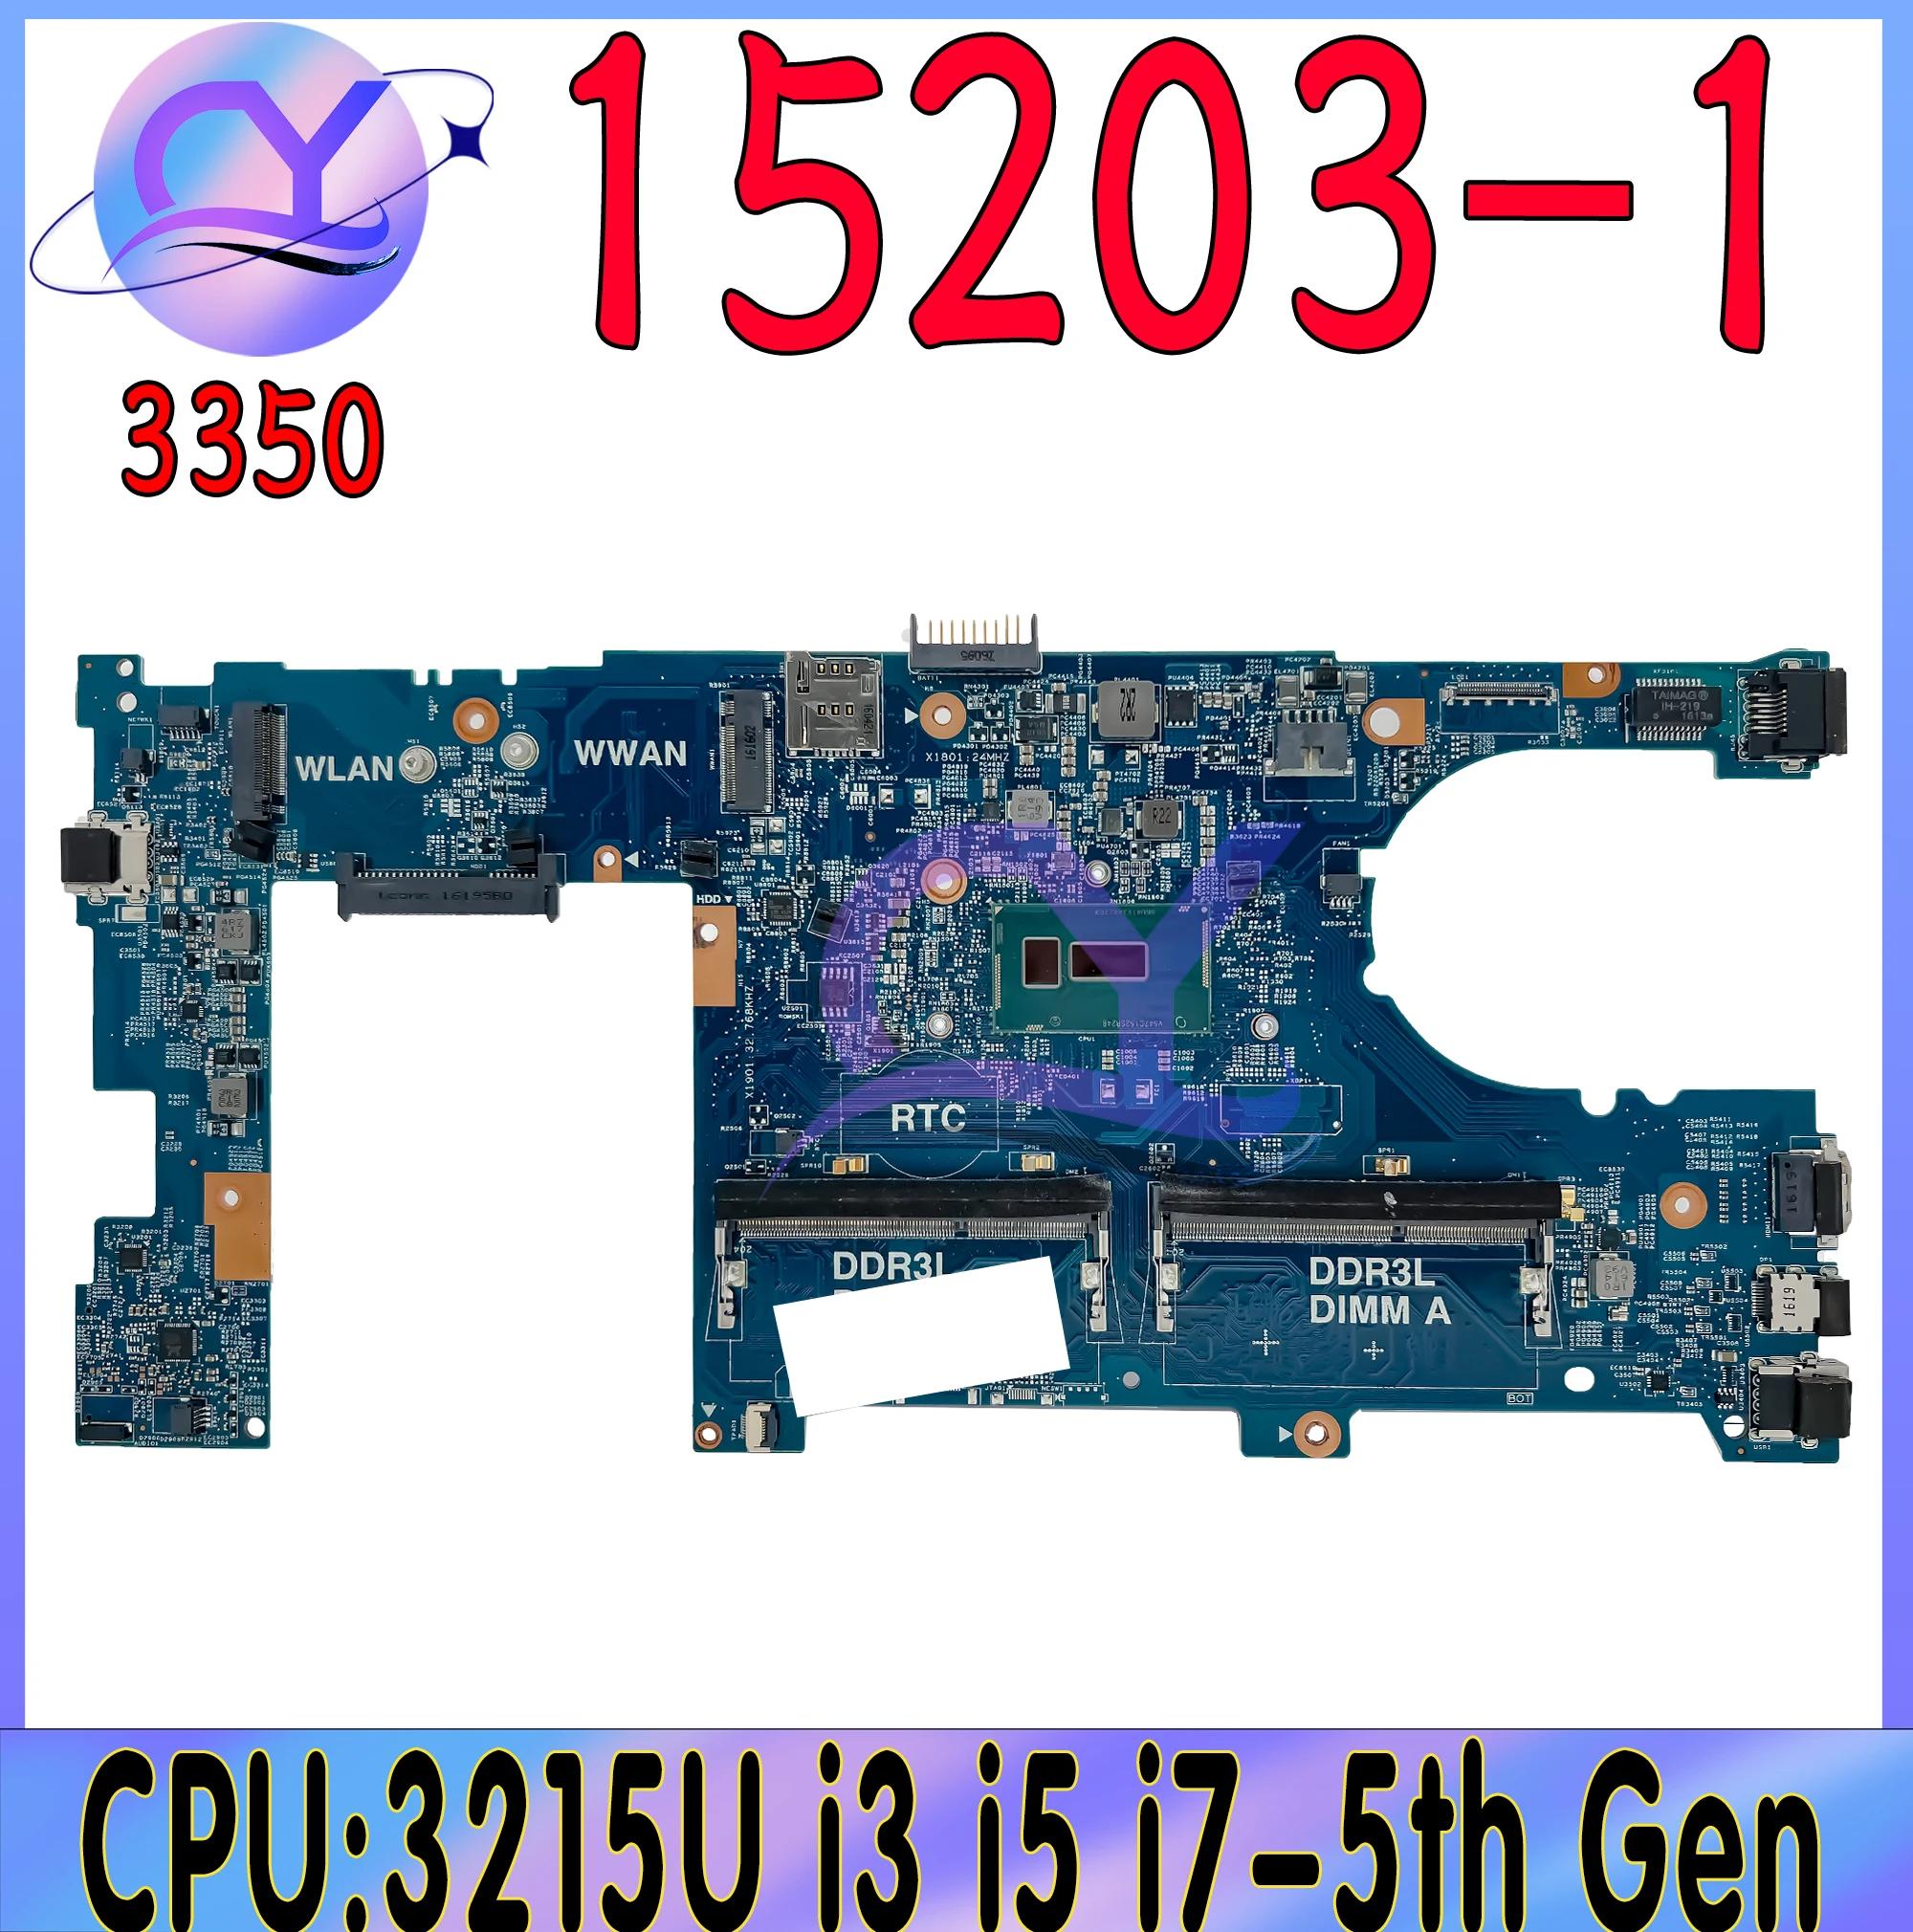  ƼƩ ƮϿ , 3215U, i3, i5, i7-5th CPU , 15203-1 Ʈ κ, 13 3350 CN-03N43N 03N43N GPFN8